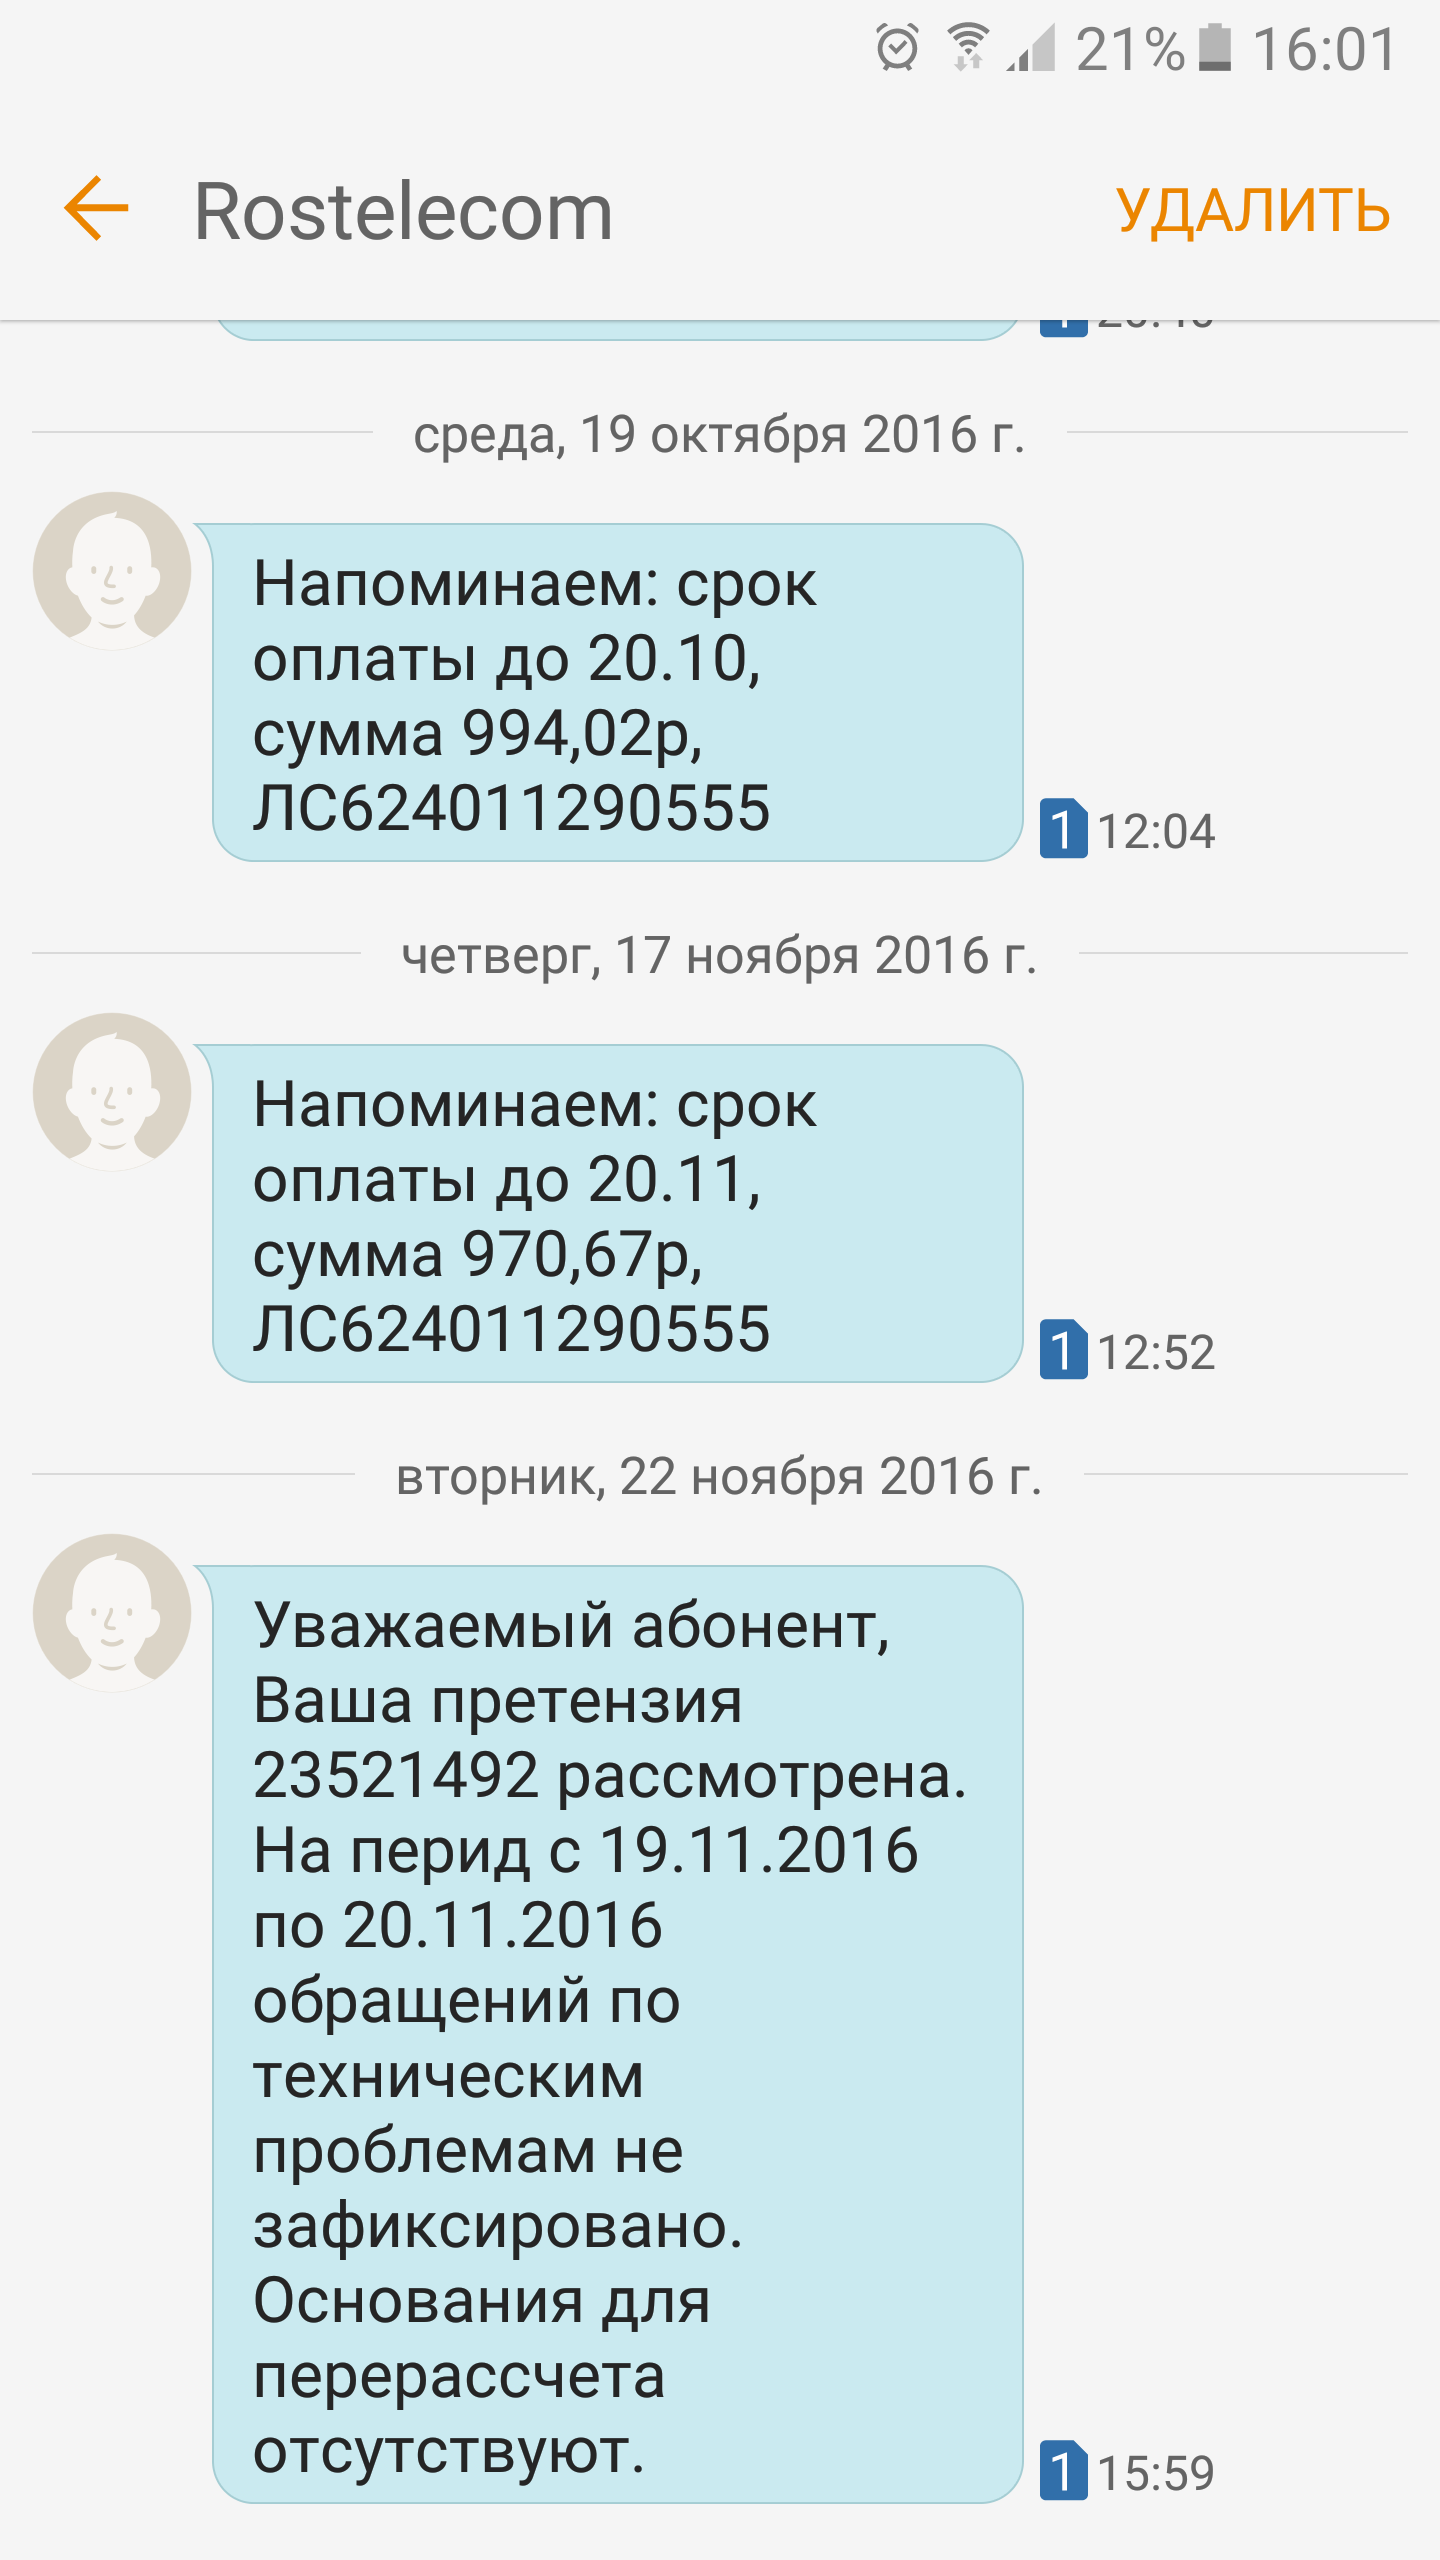 Саяногорск Инфо - screenshot_20161122-160125.png, Скачано: 389